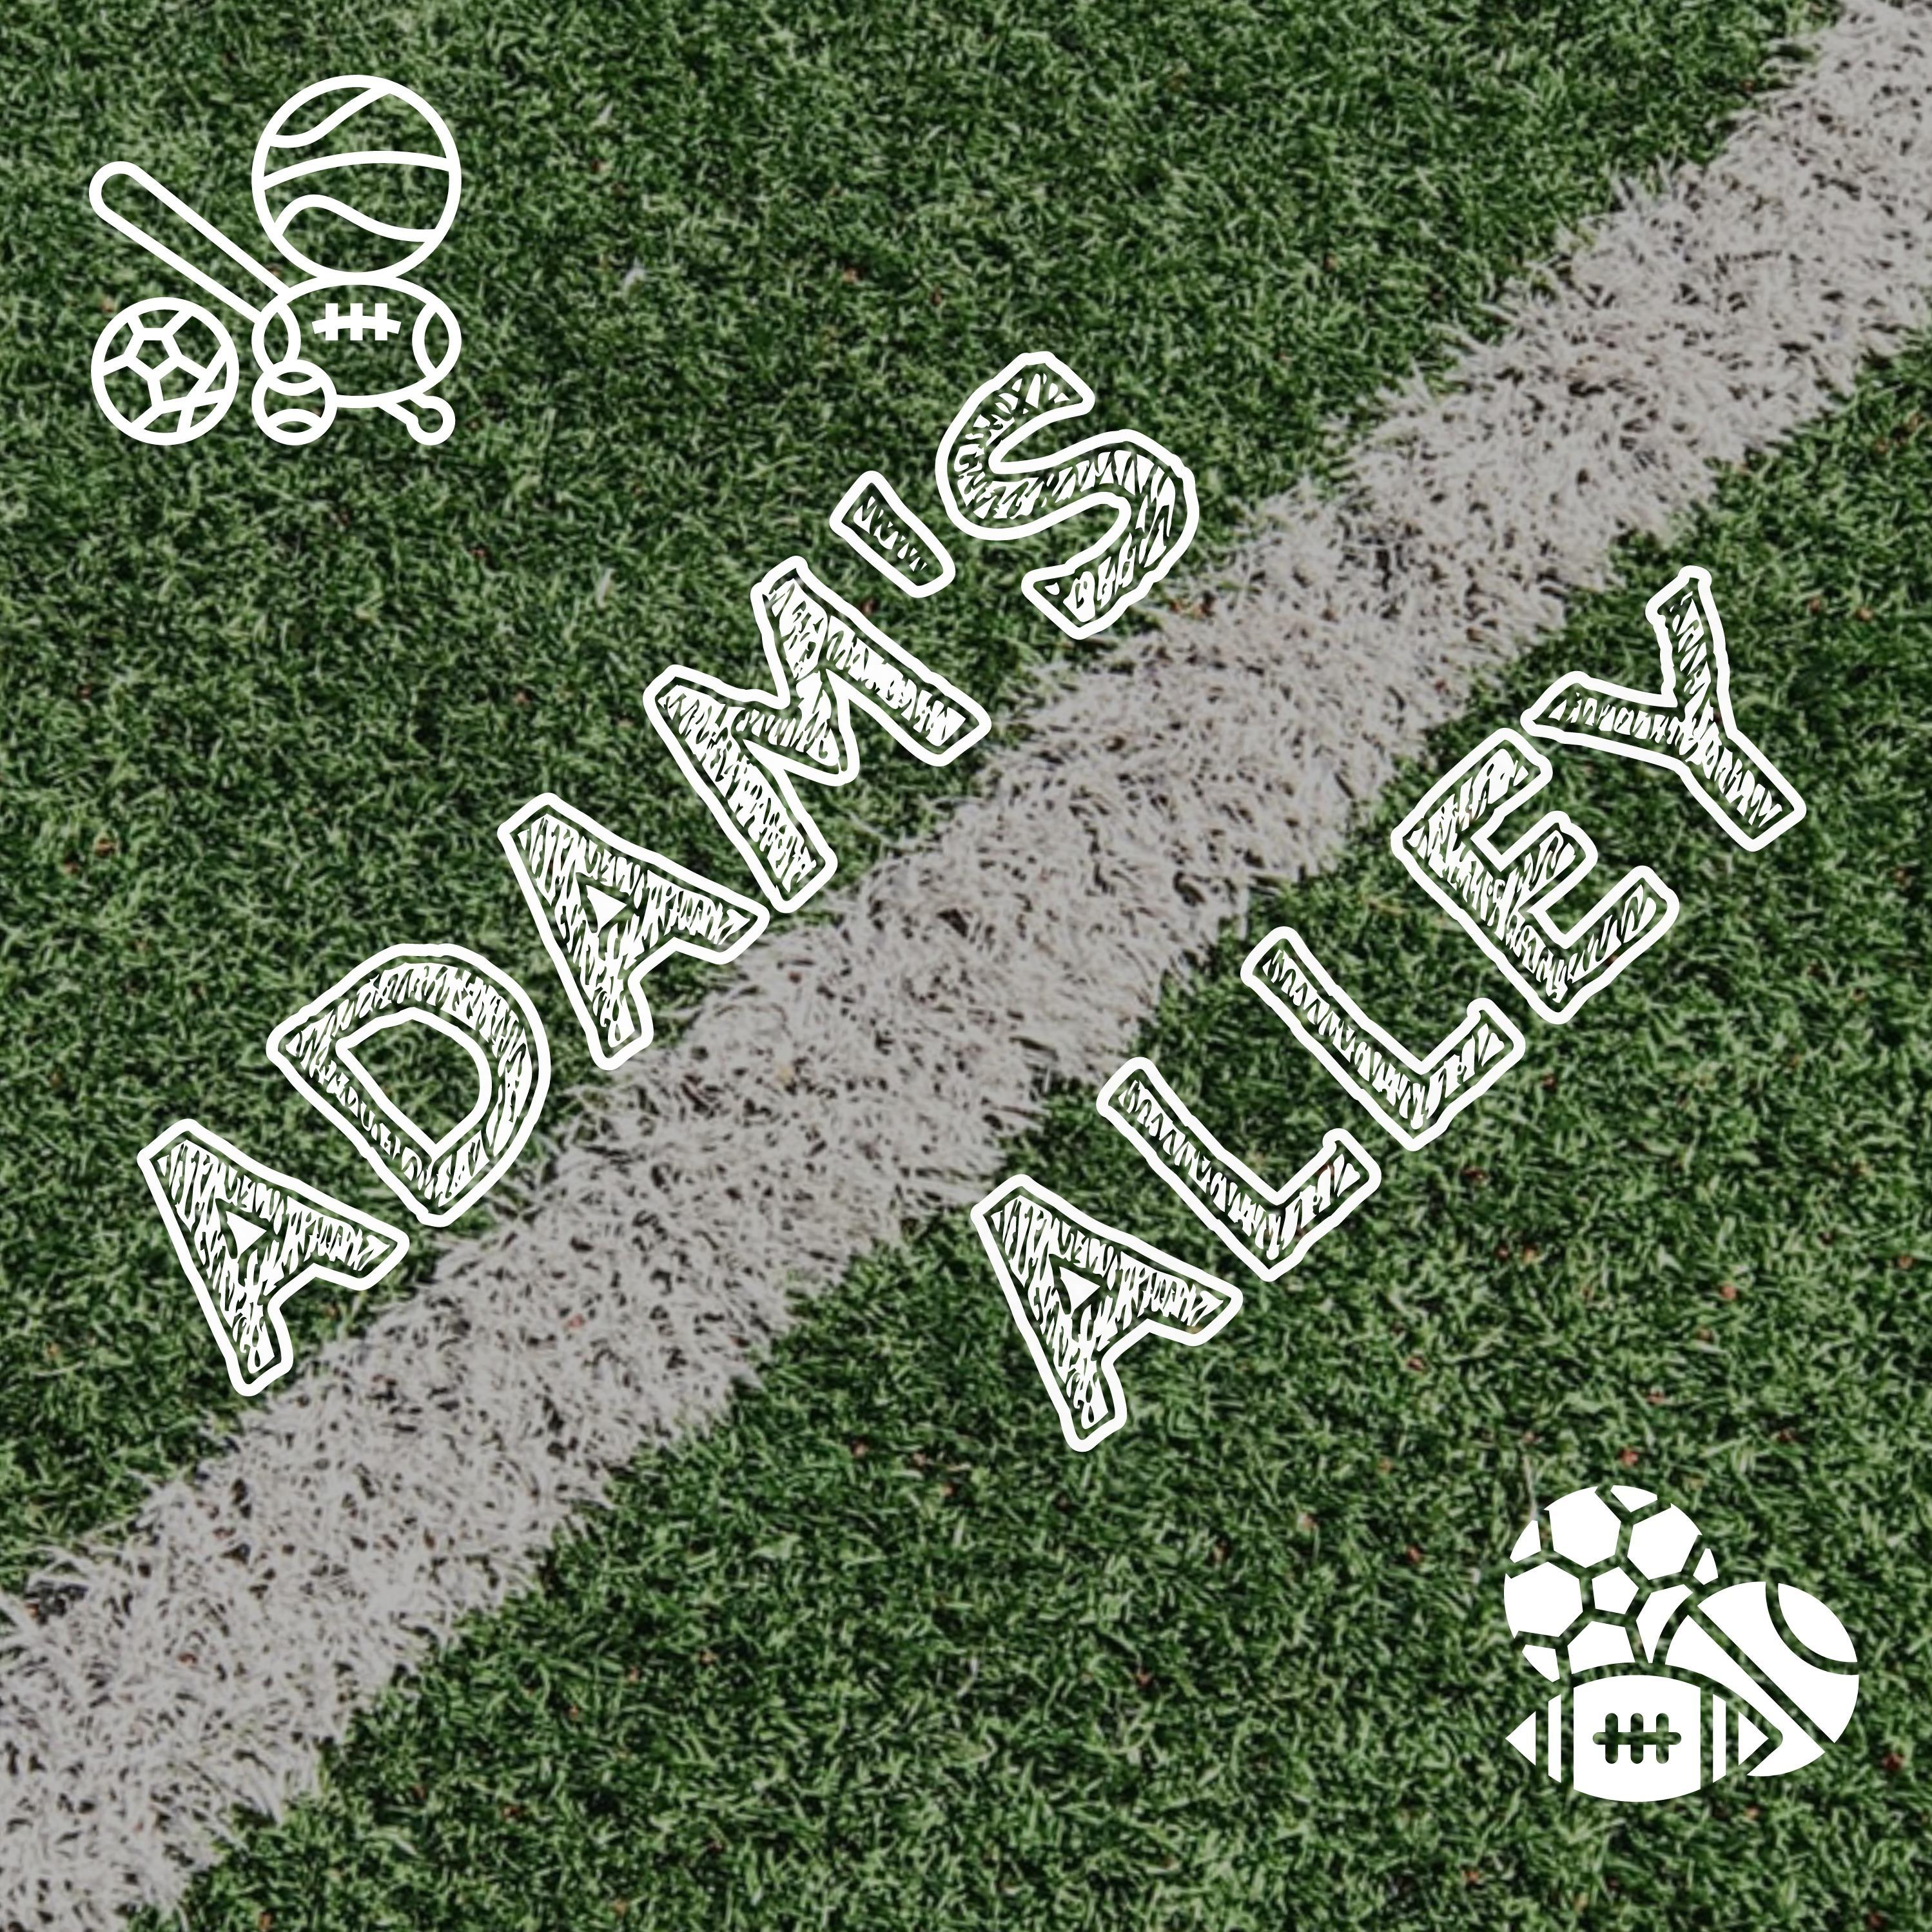 Adam's Alley